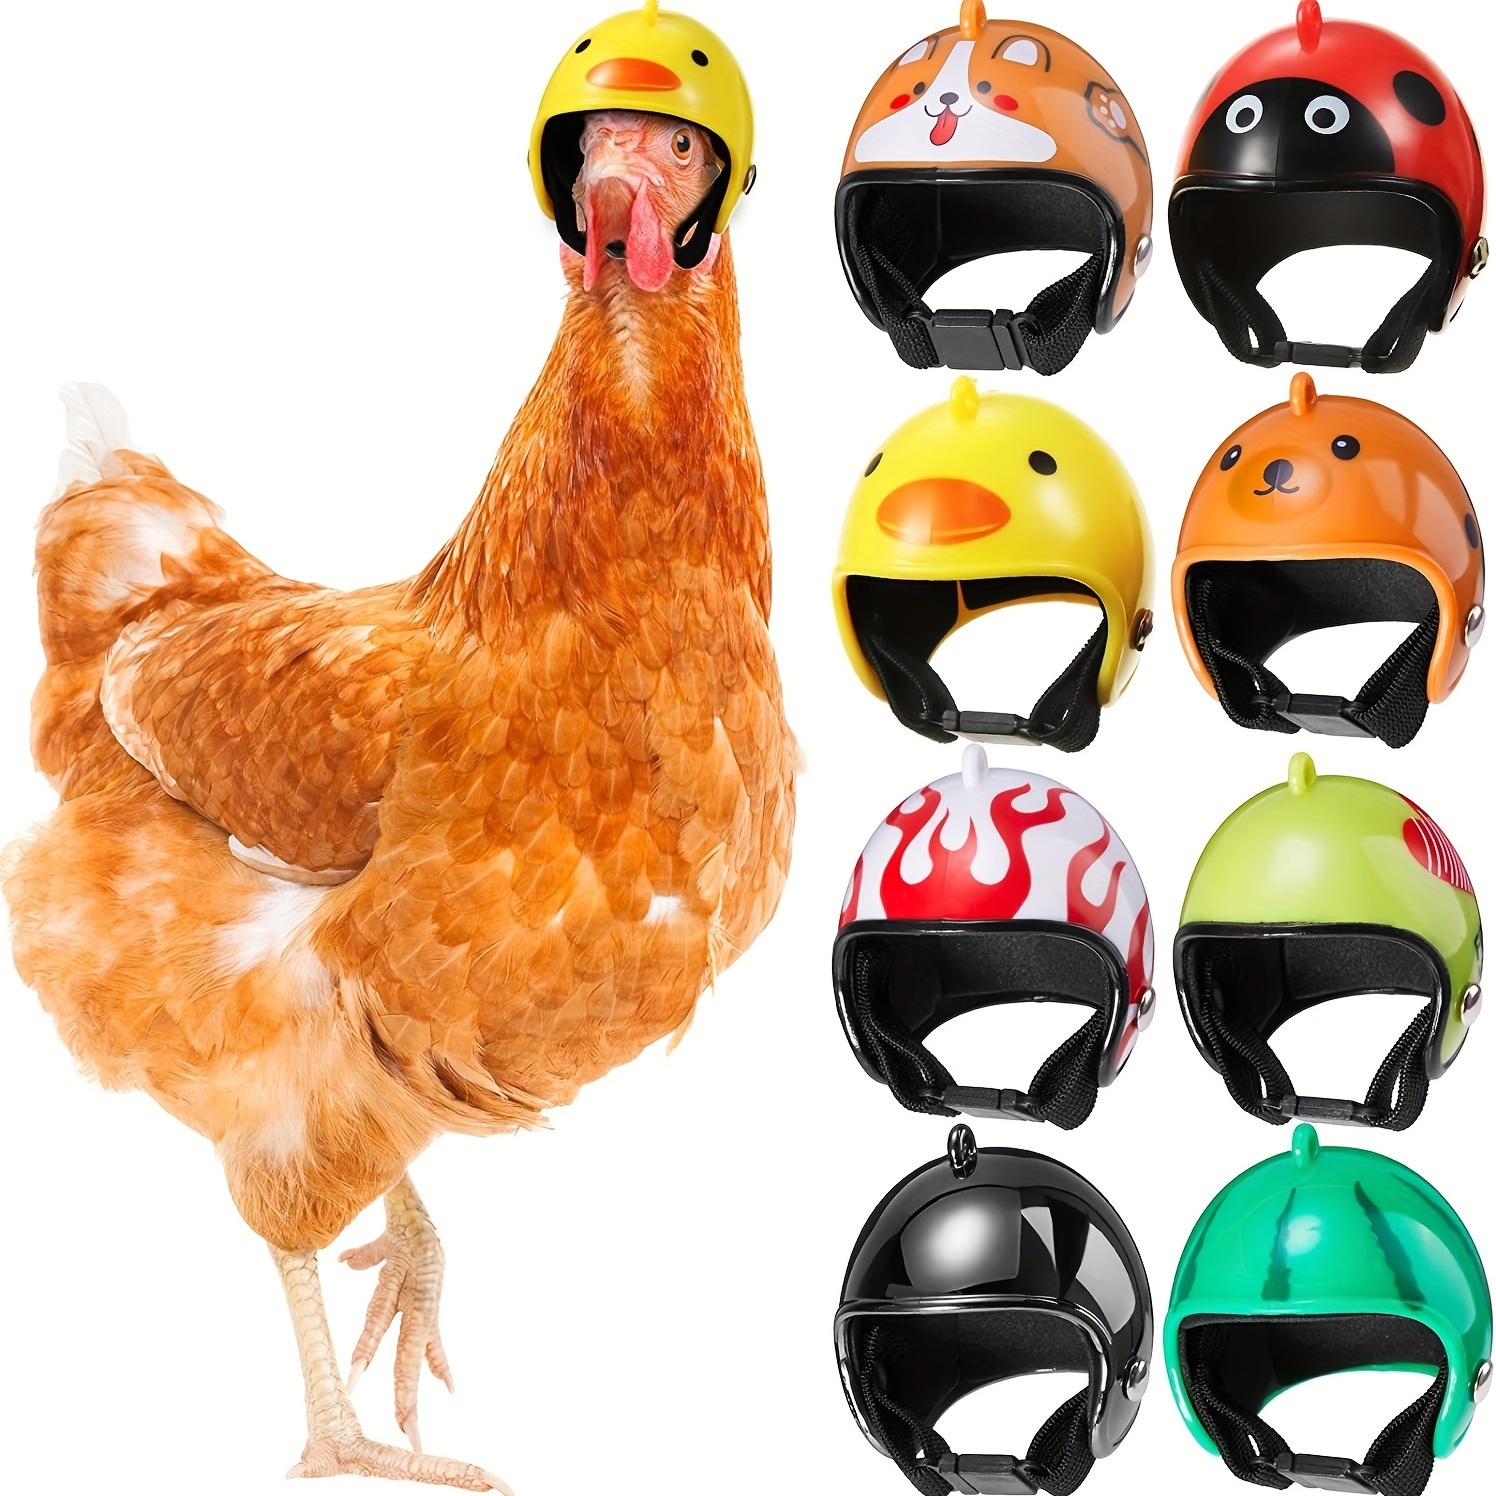 Helme für Hühner ernsthaft? Warum? (Tiere, Huhn, Helm)